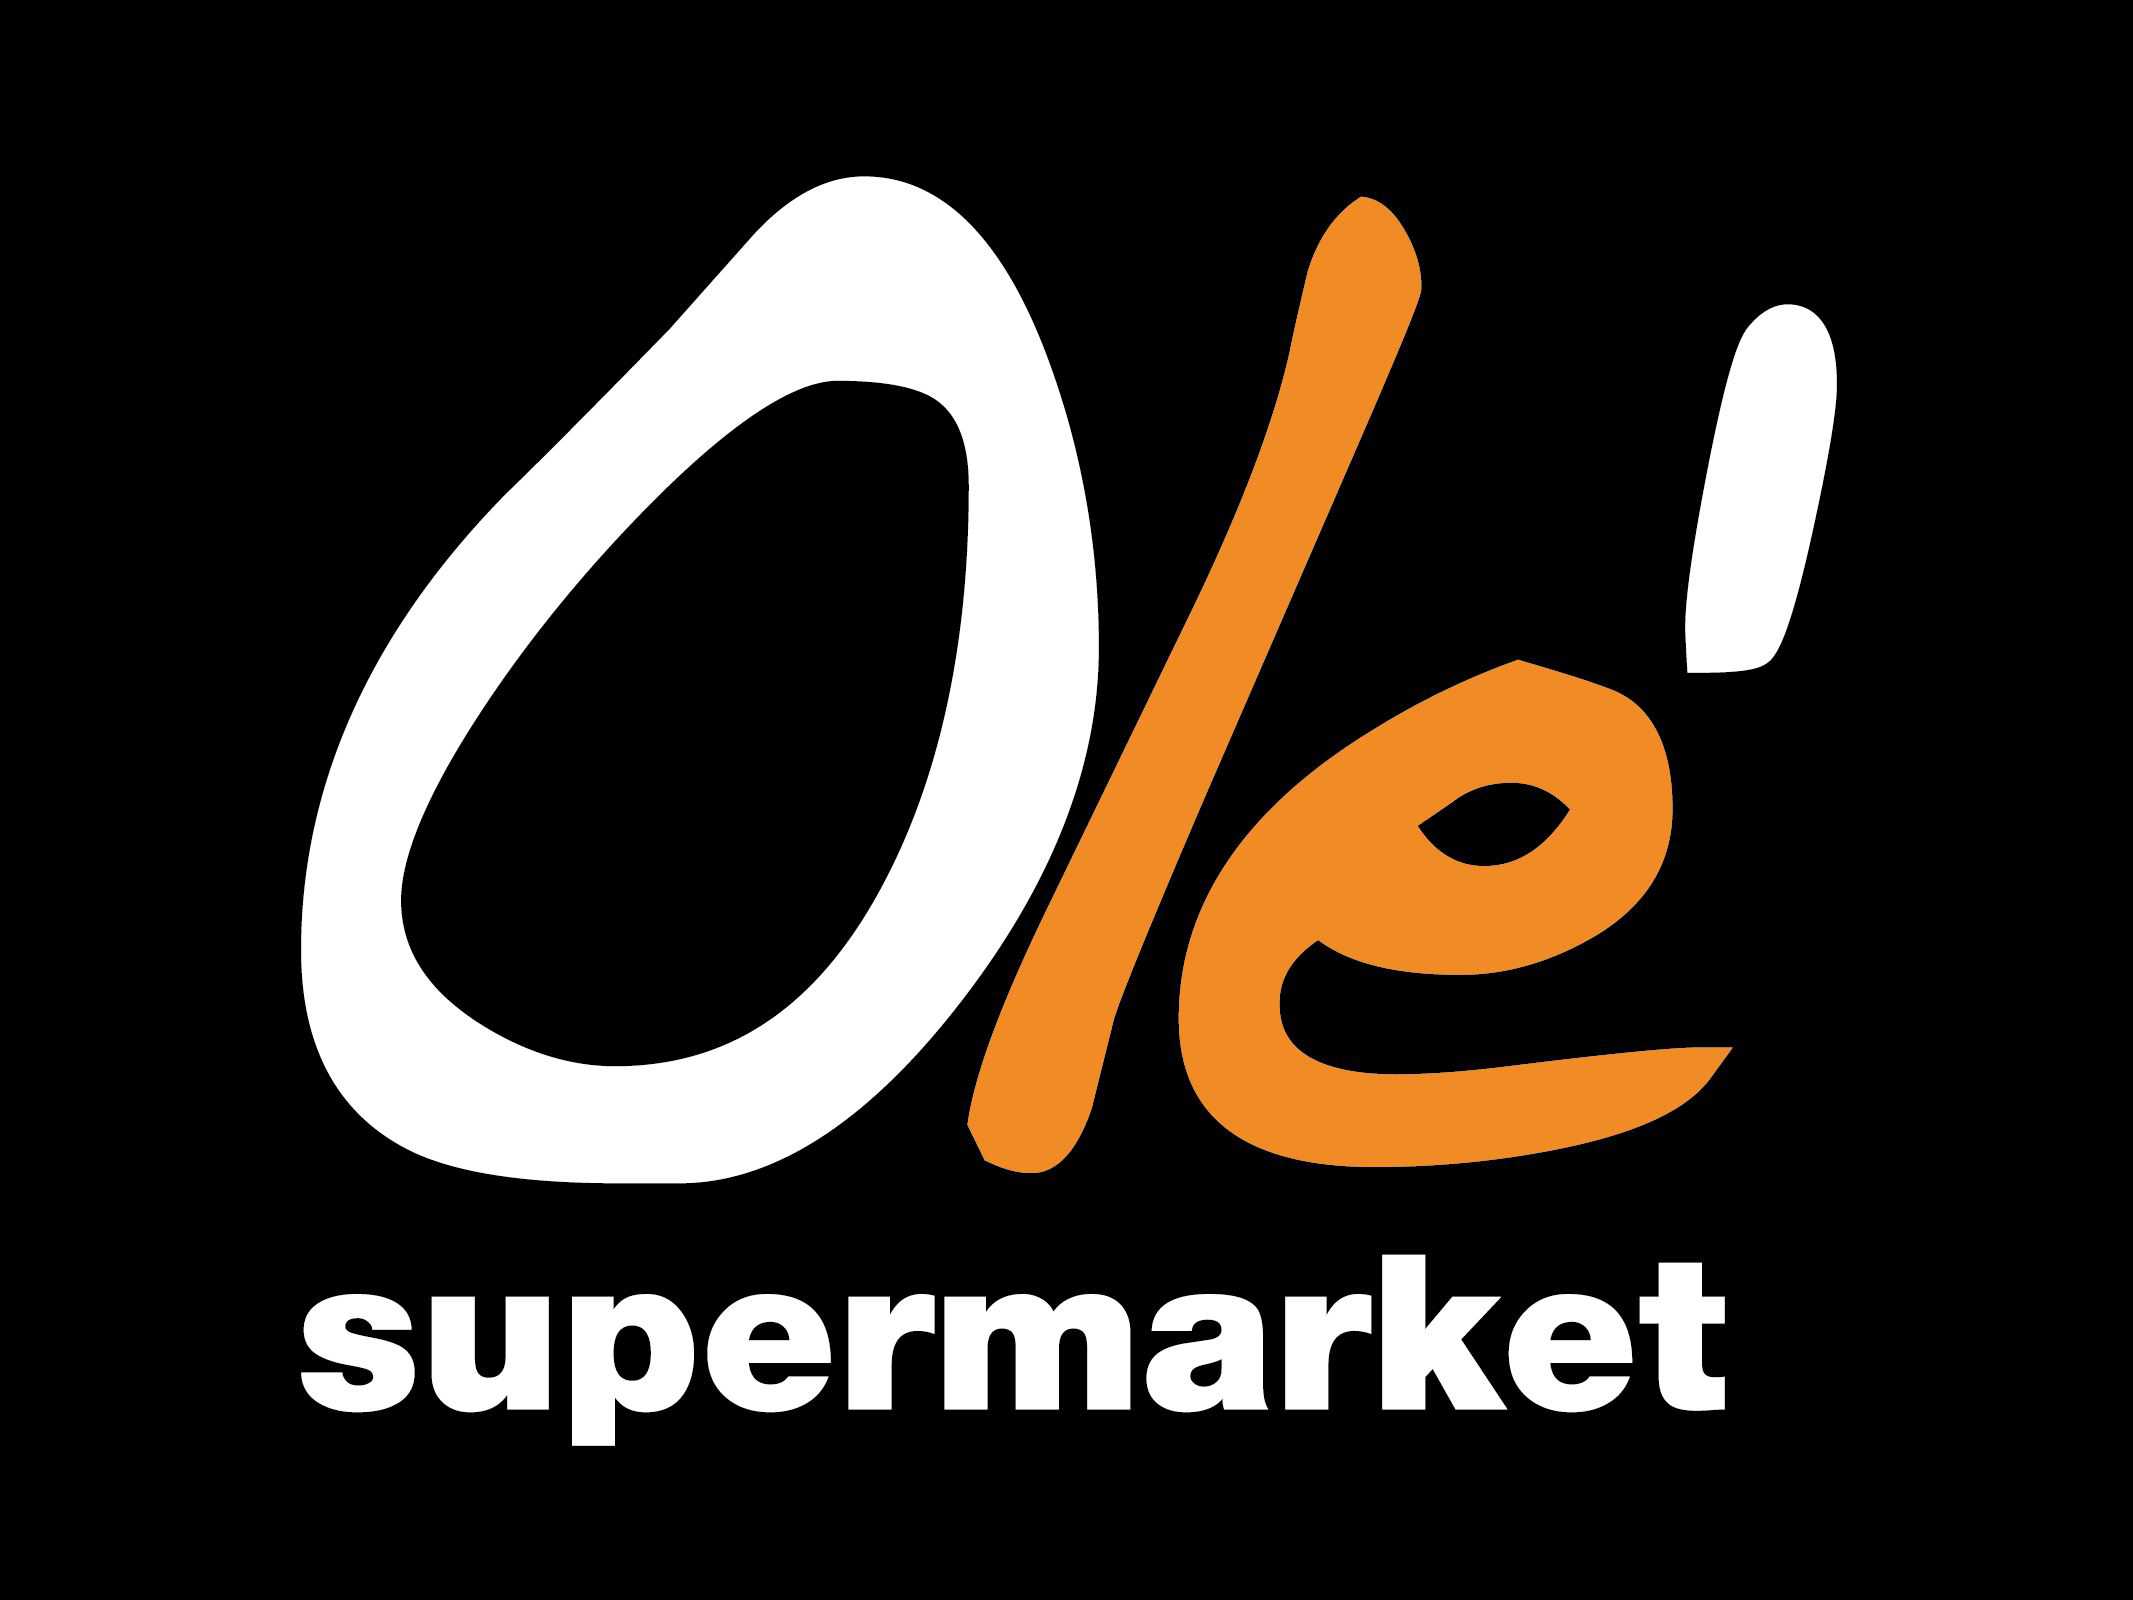 ole supermarket logo hey xian